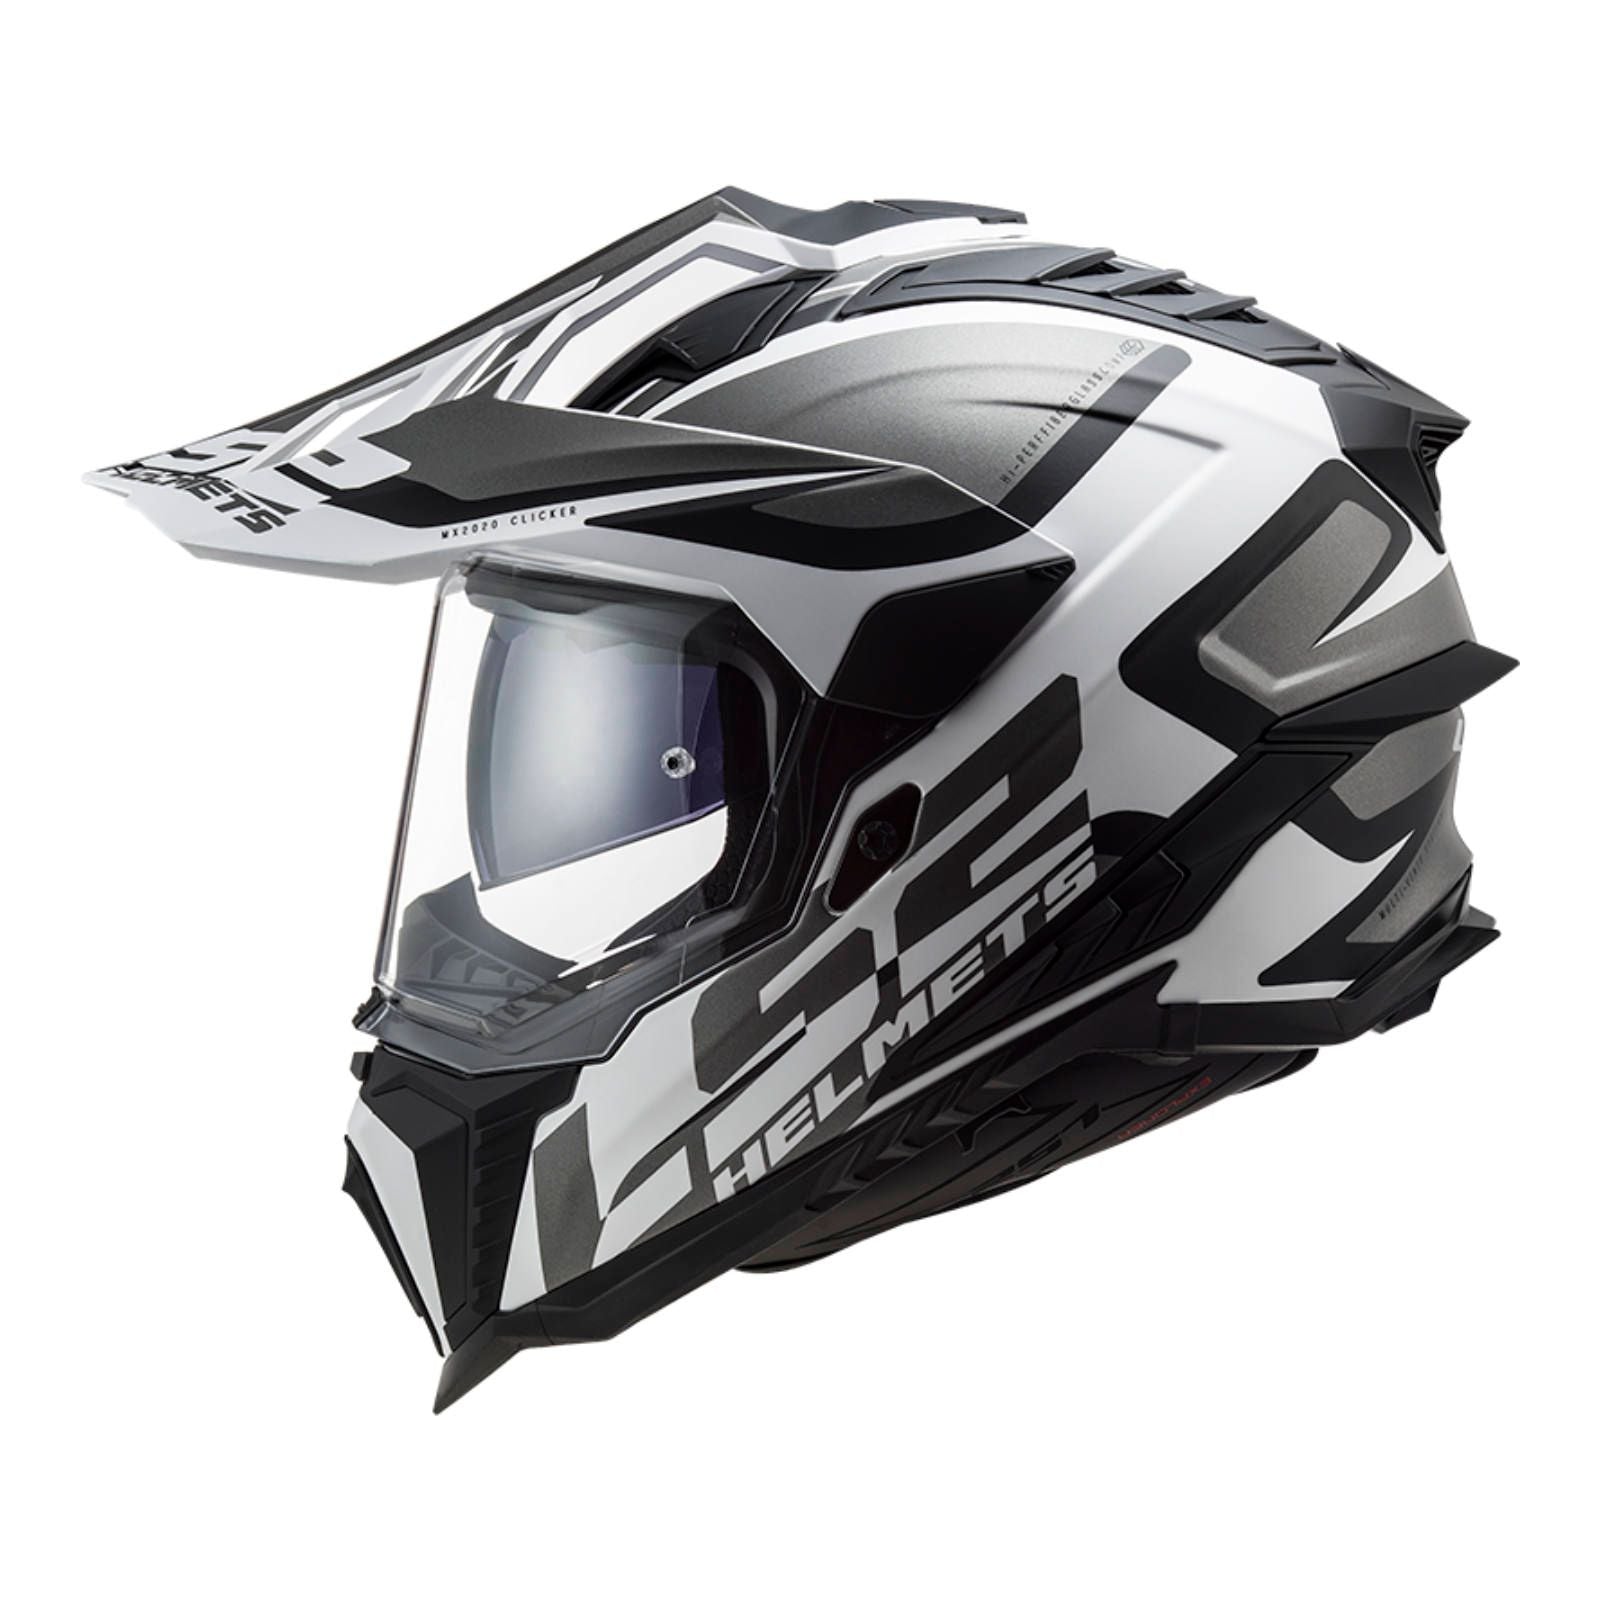 New LS2 Explorer Alter Helmet - Matte Black / White (XS) #LS2MX701ALTMBWXS